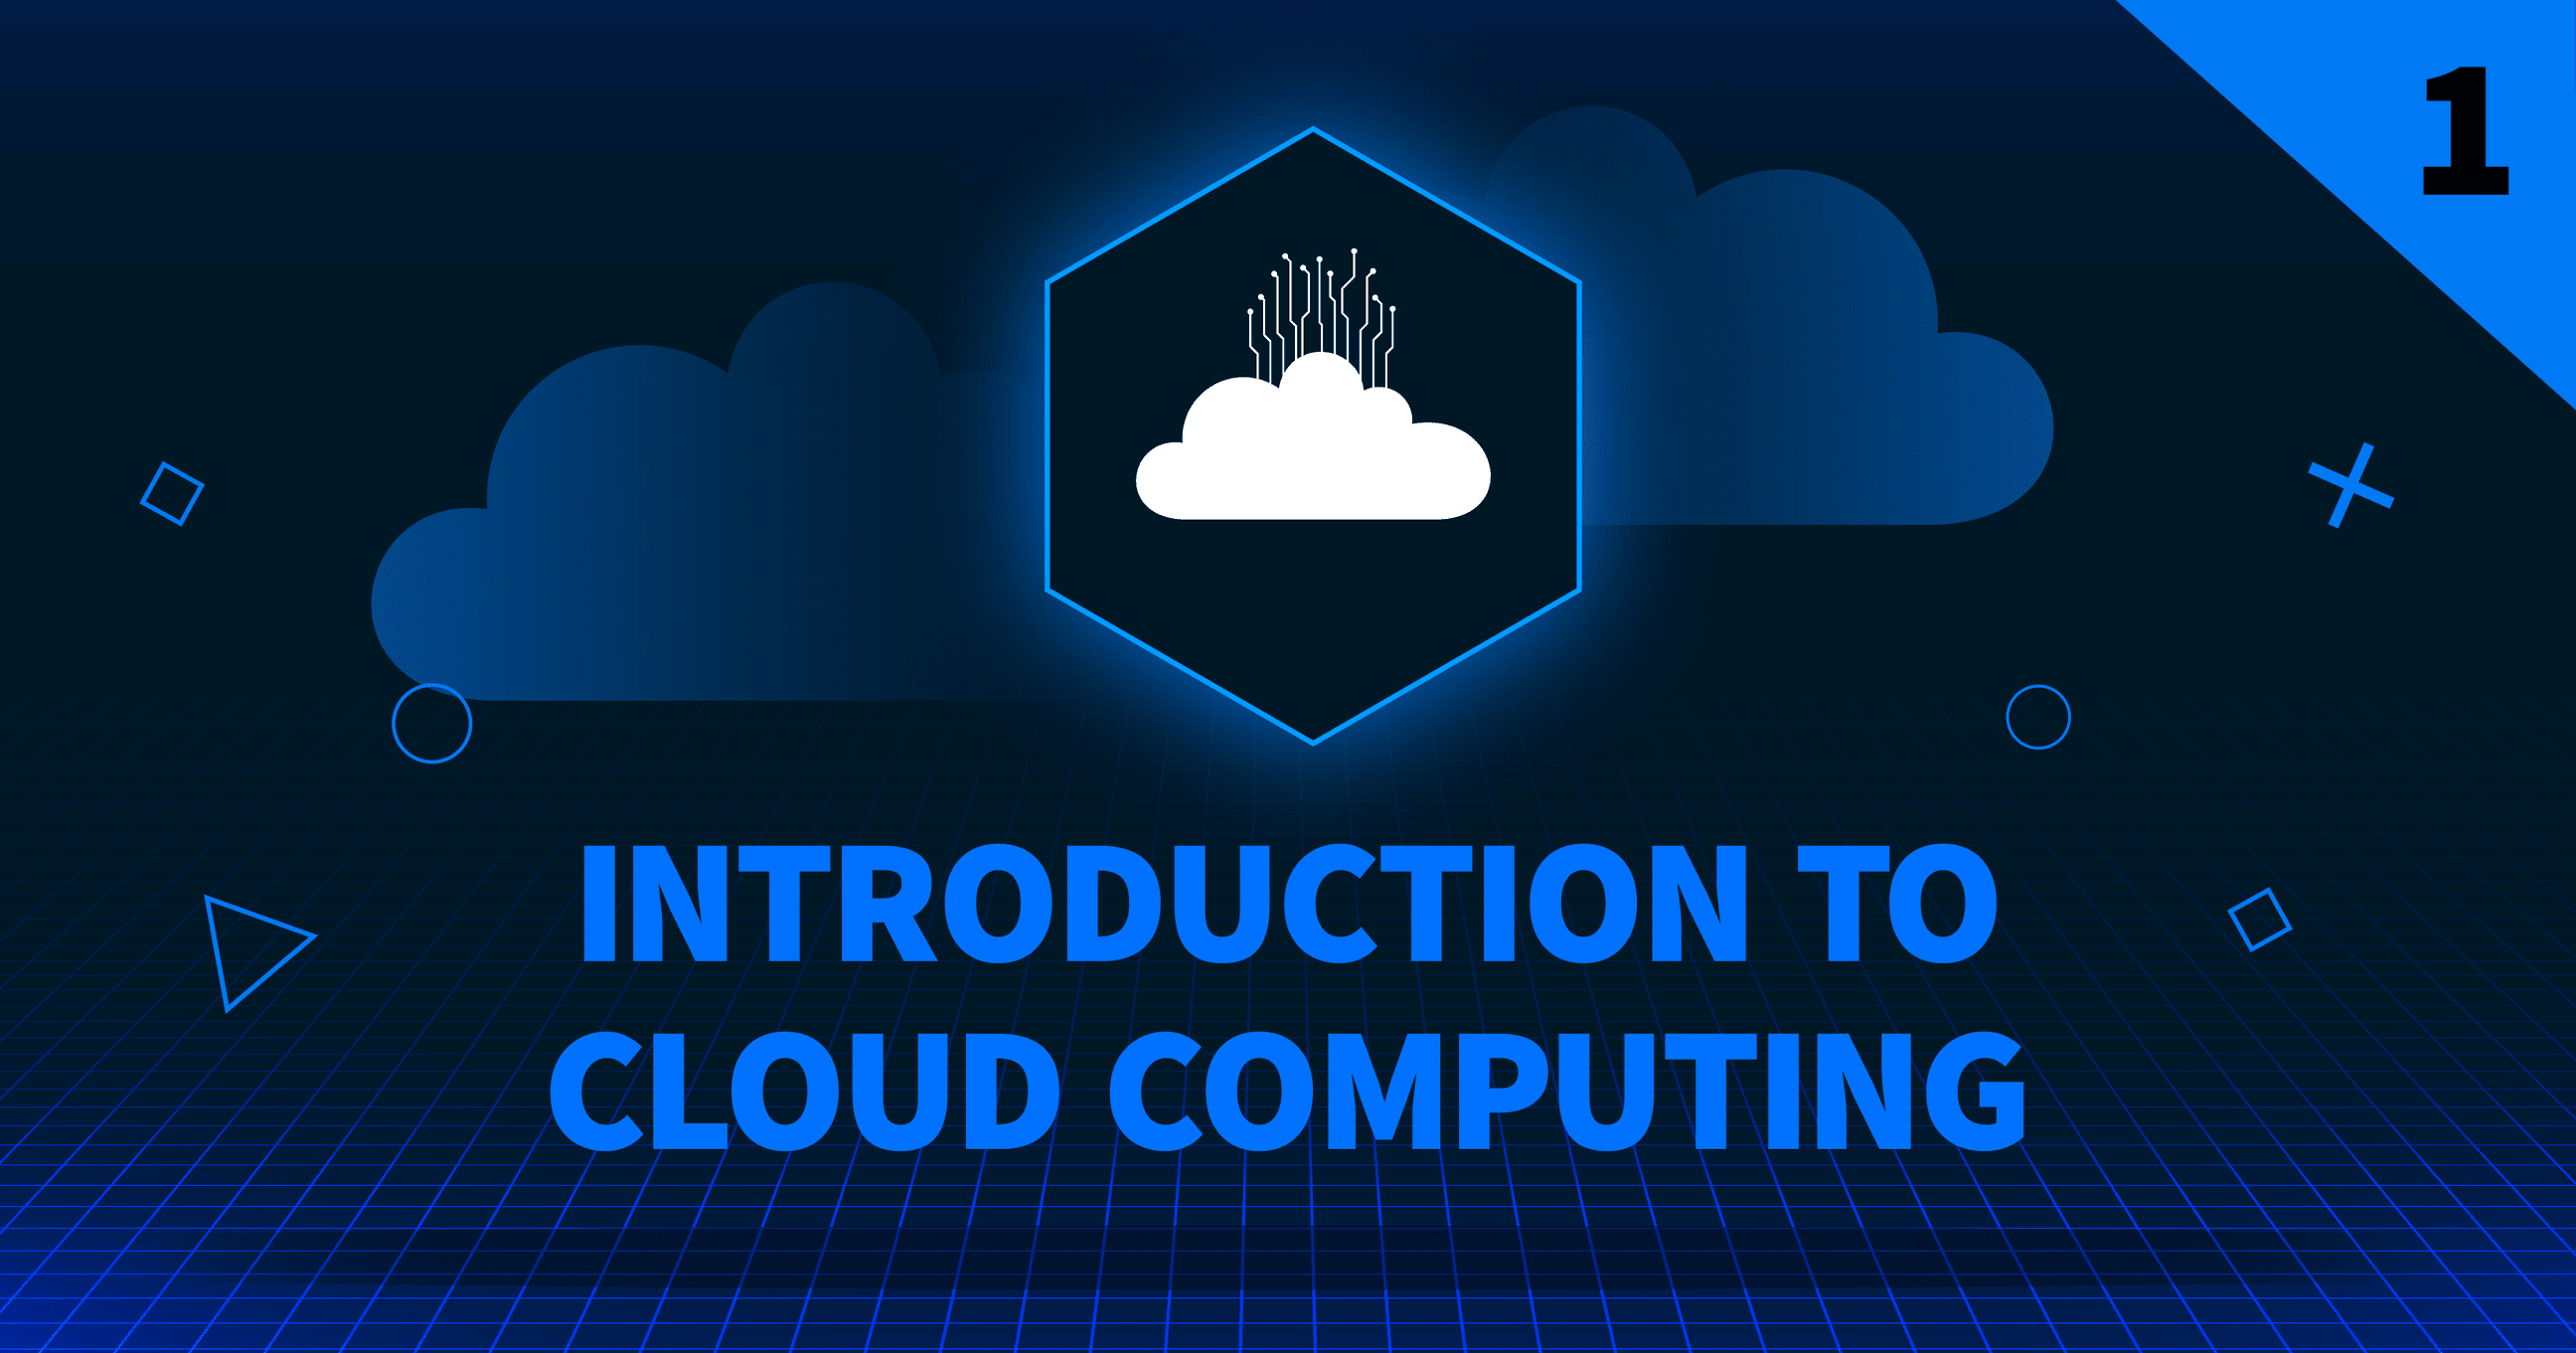 Introduzione al cloud computing